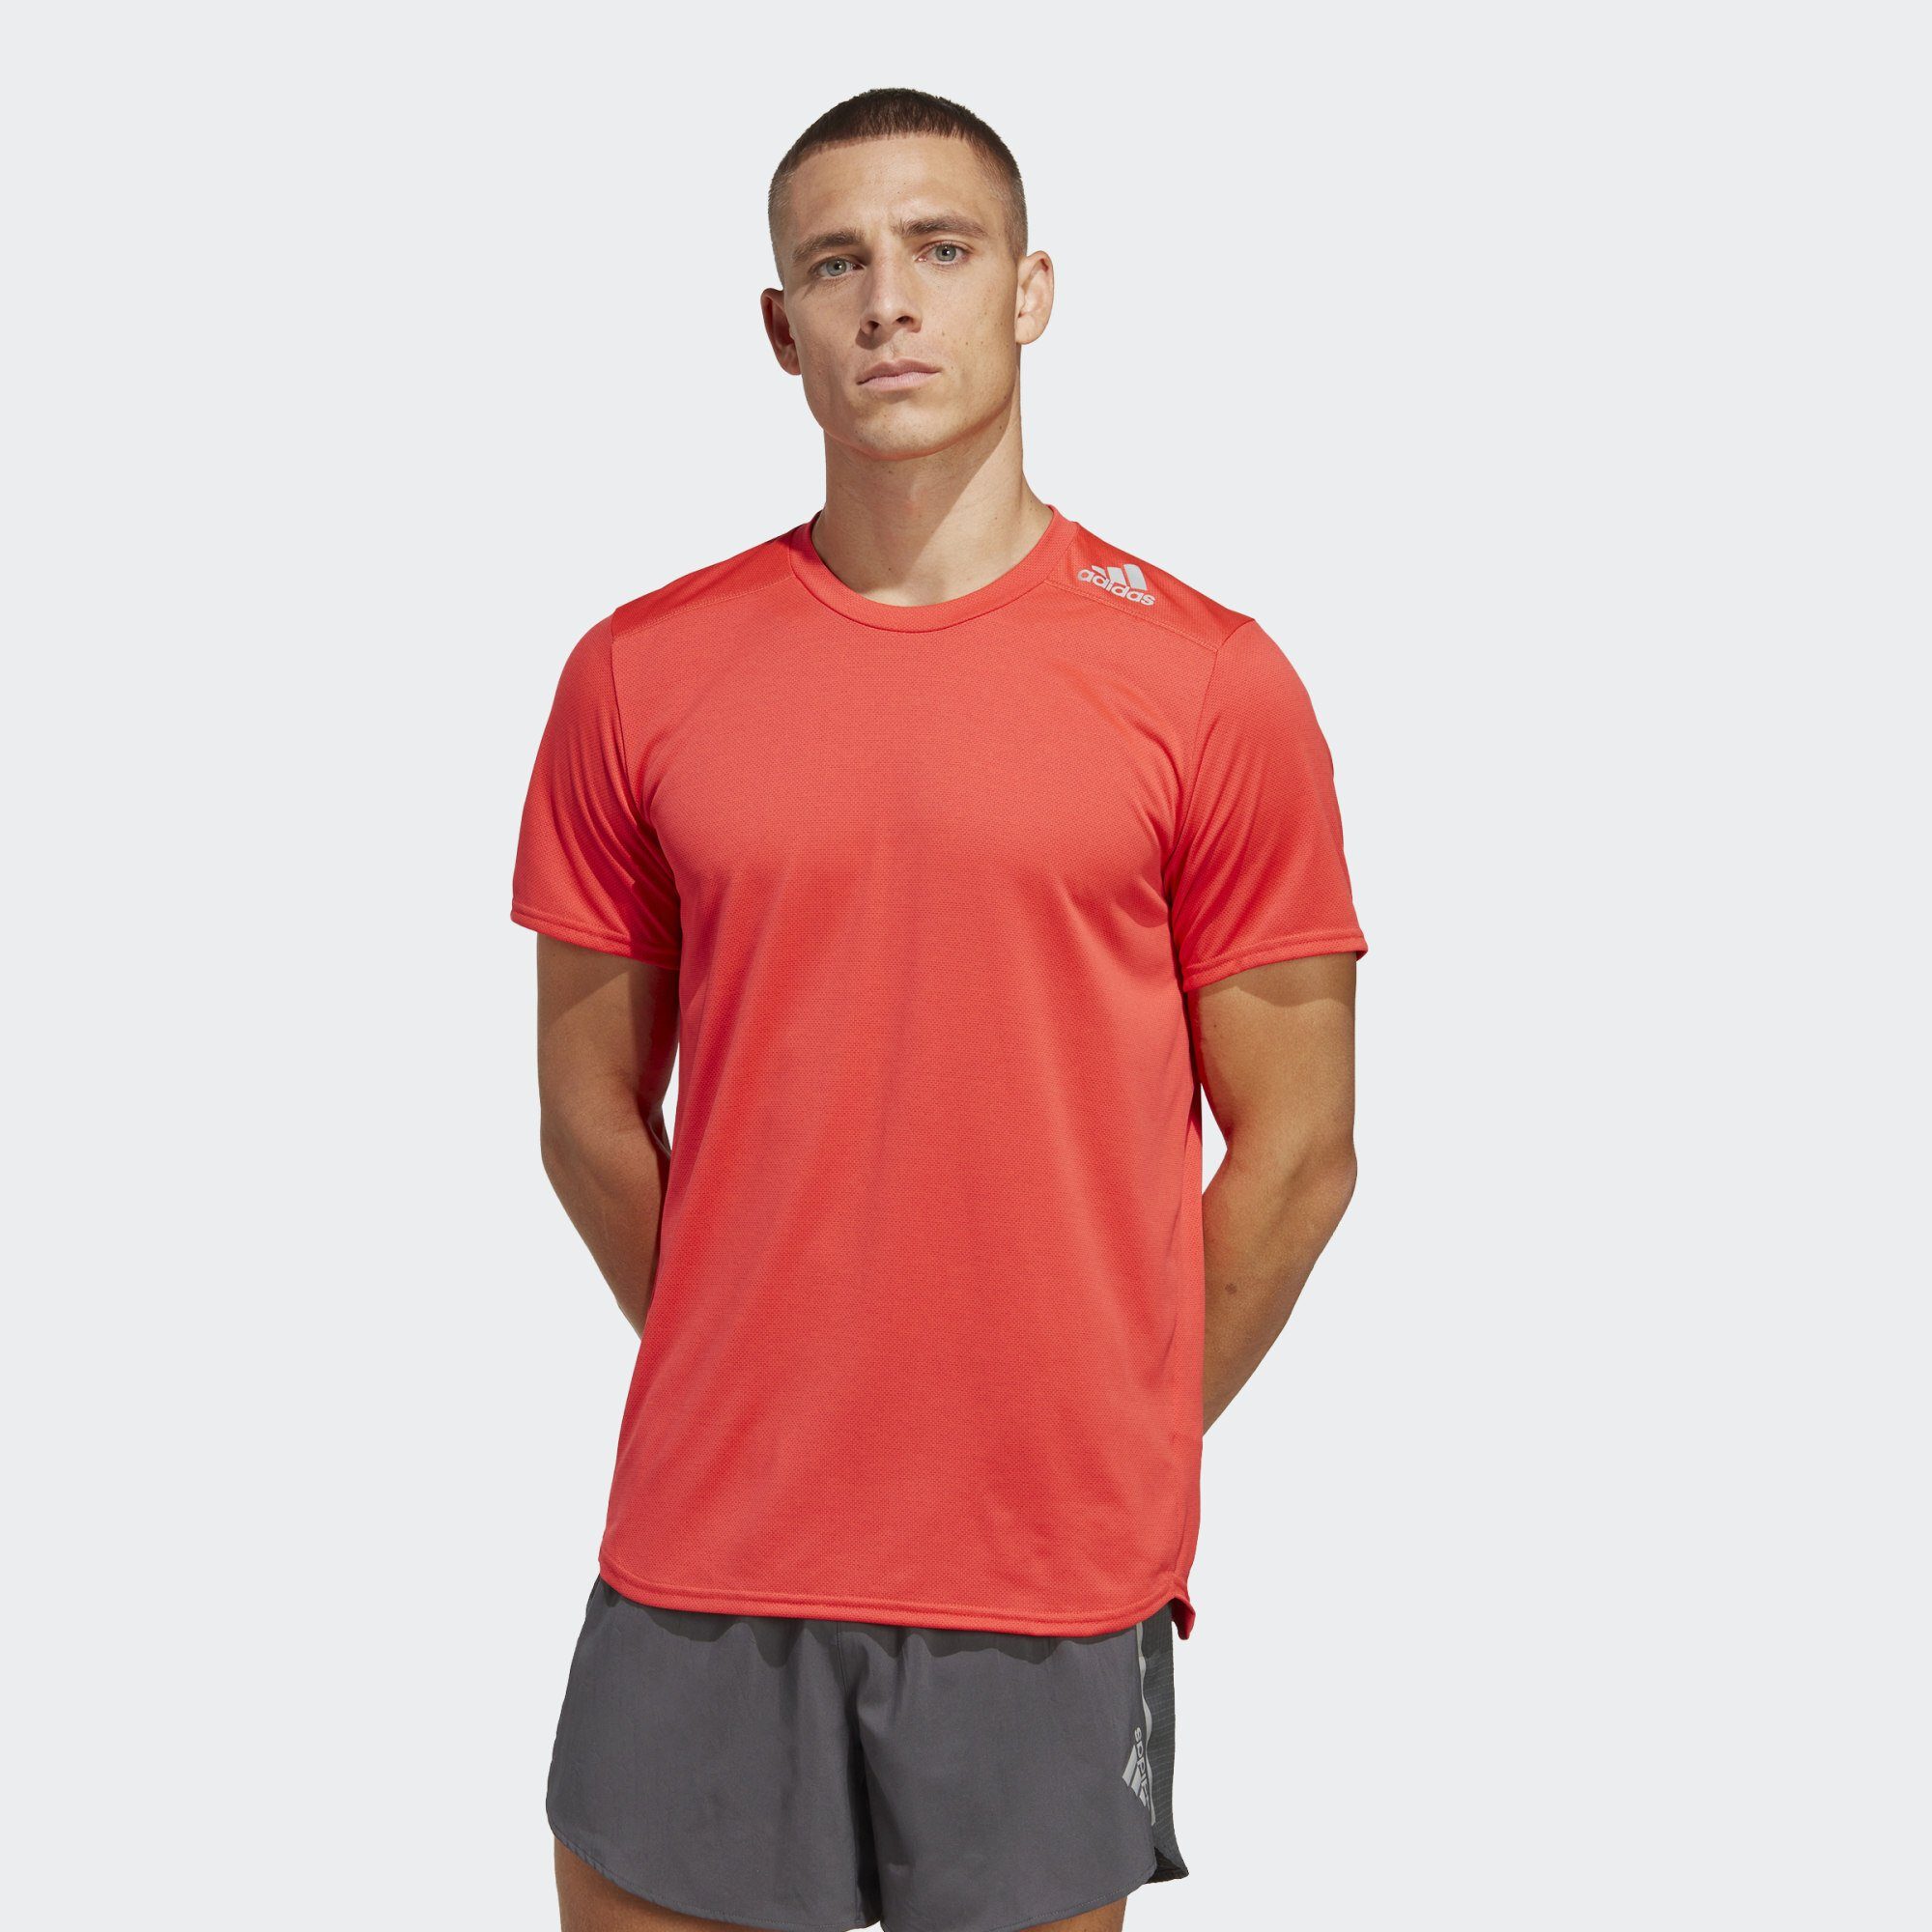 RUNNING Performance Laufshirt adidas T-SHIRT Red Bright DESIGNED 4